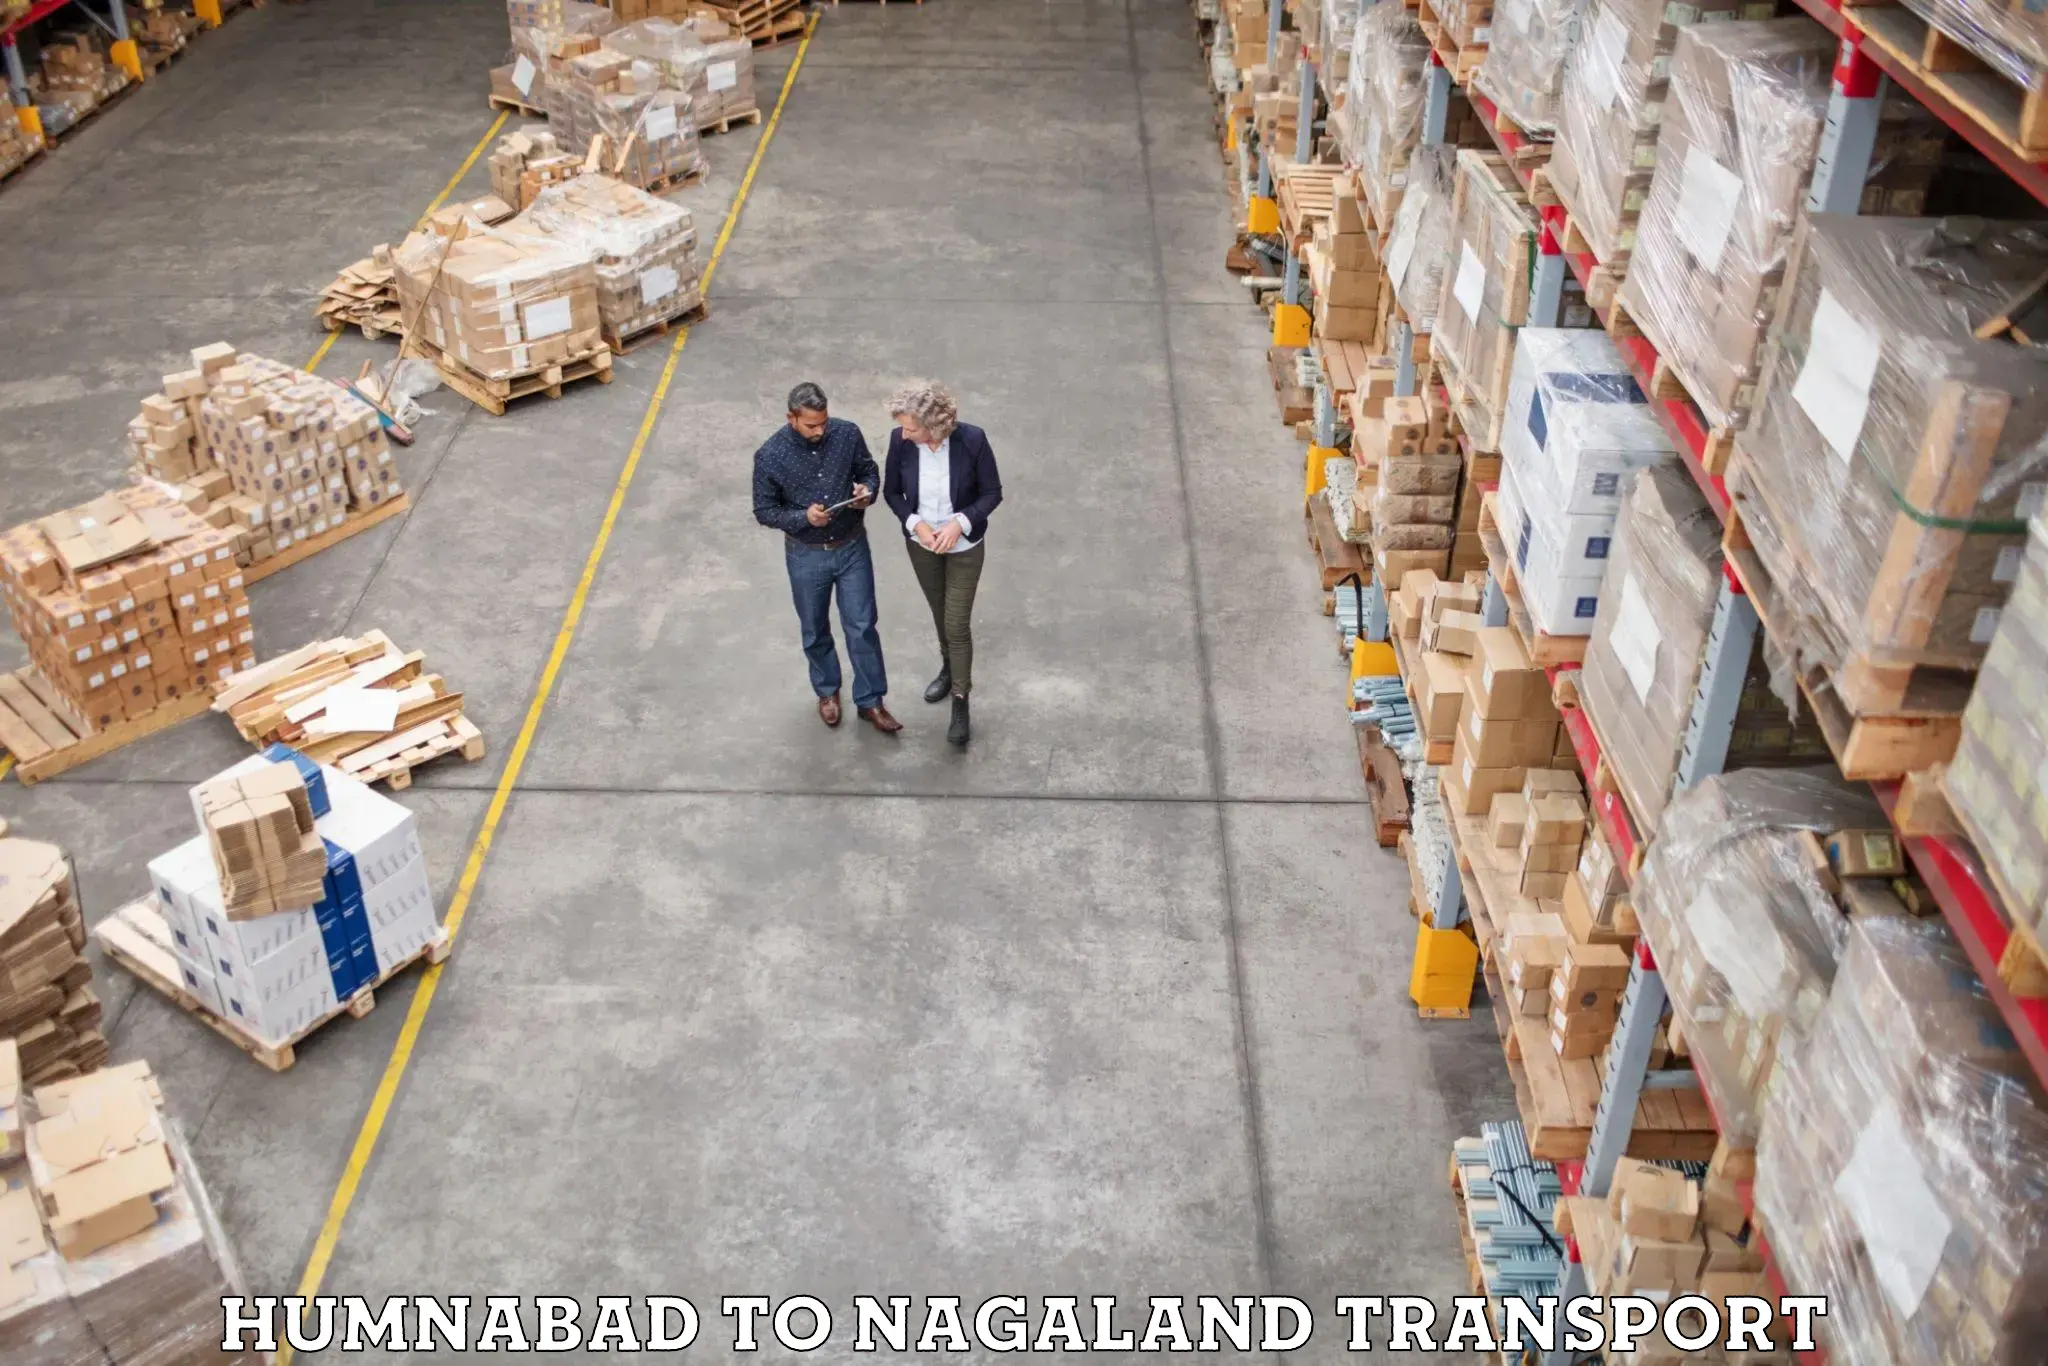 Shipping partner Humnabad to Nagaland